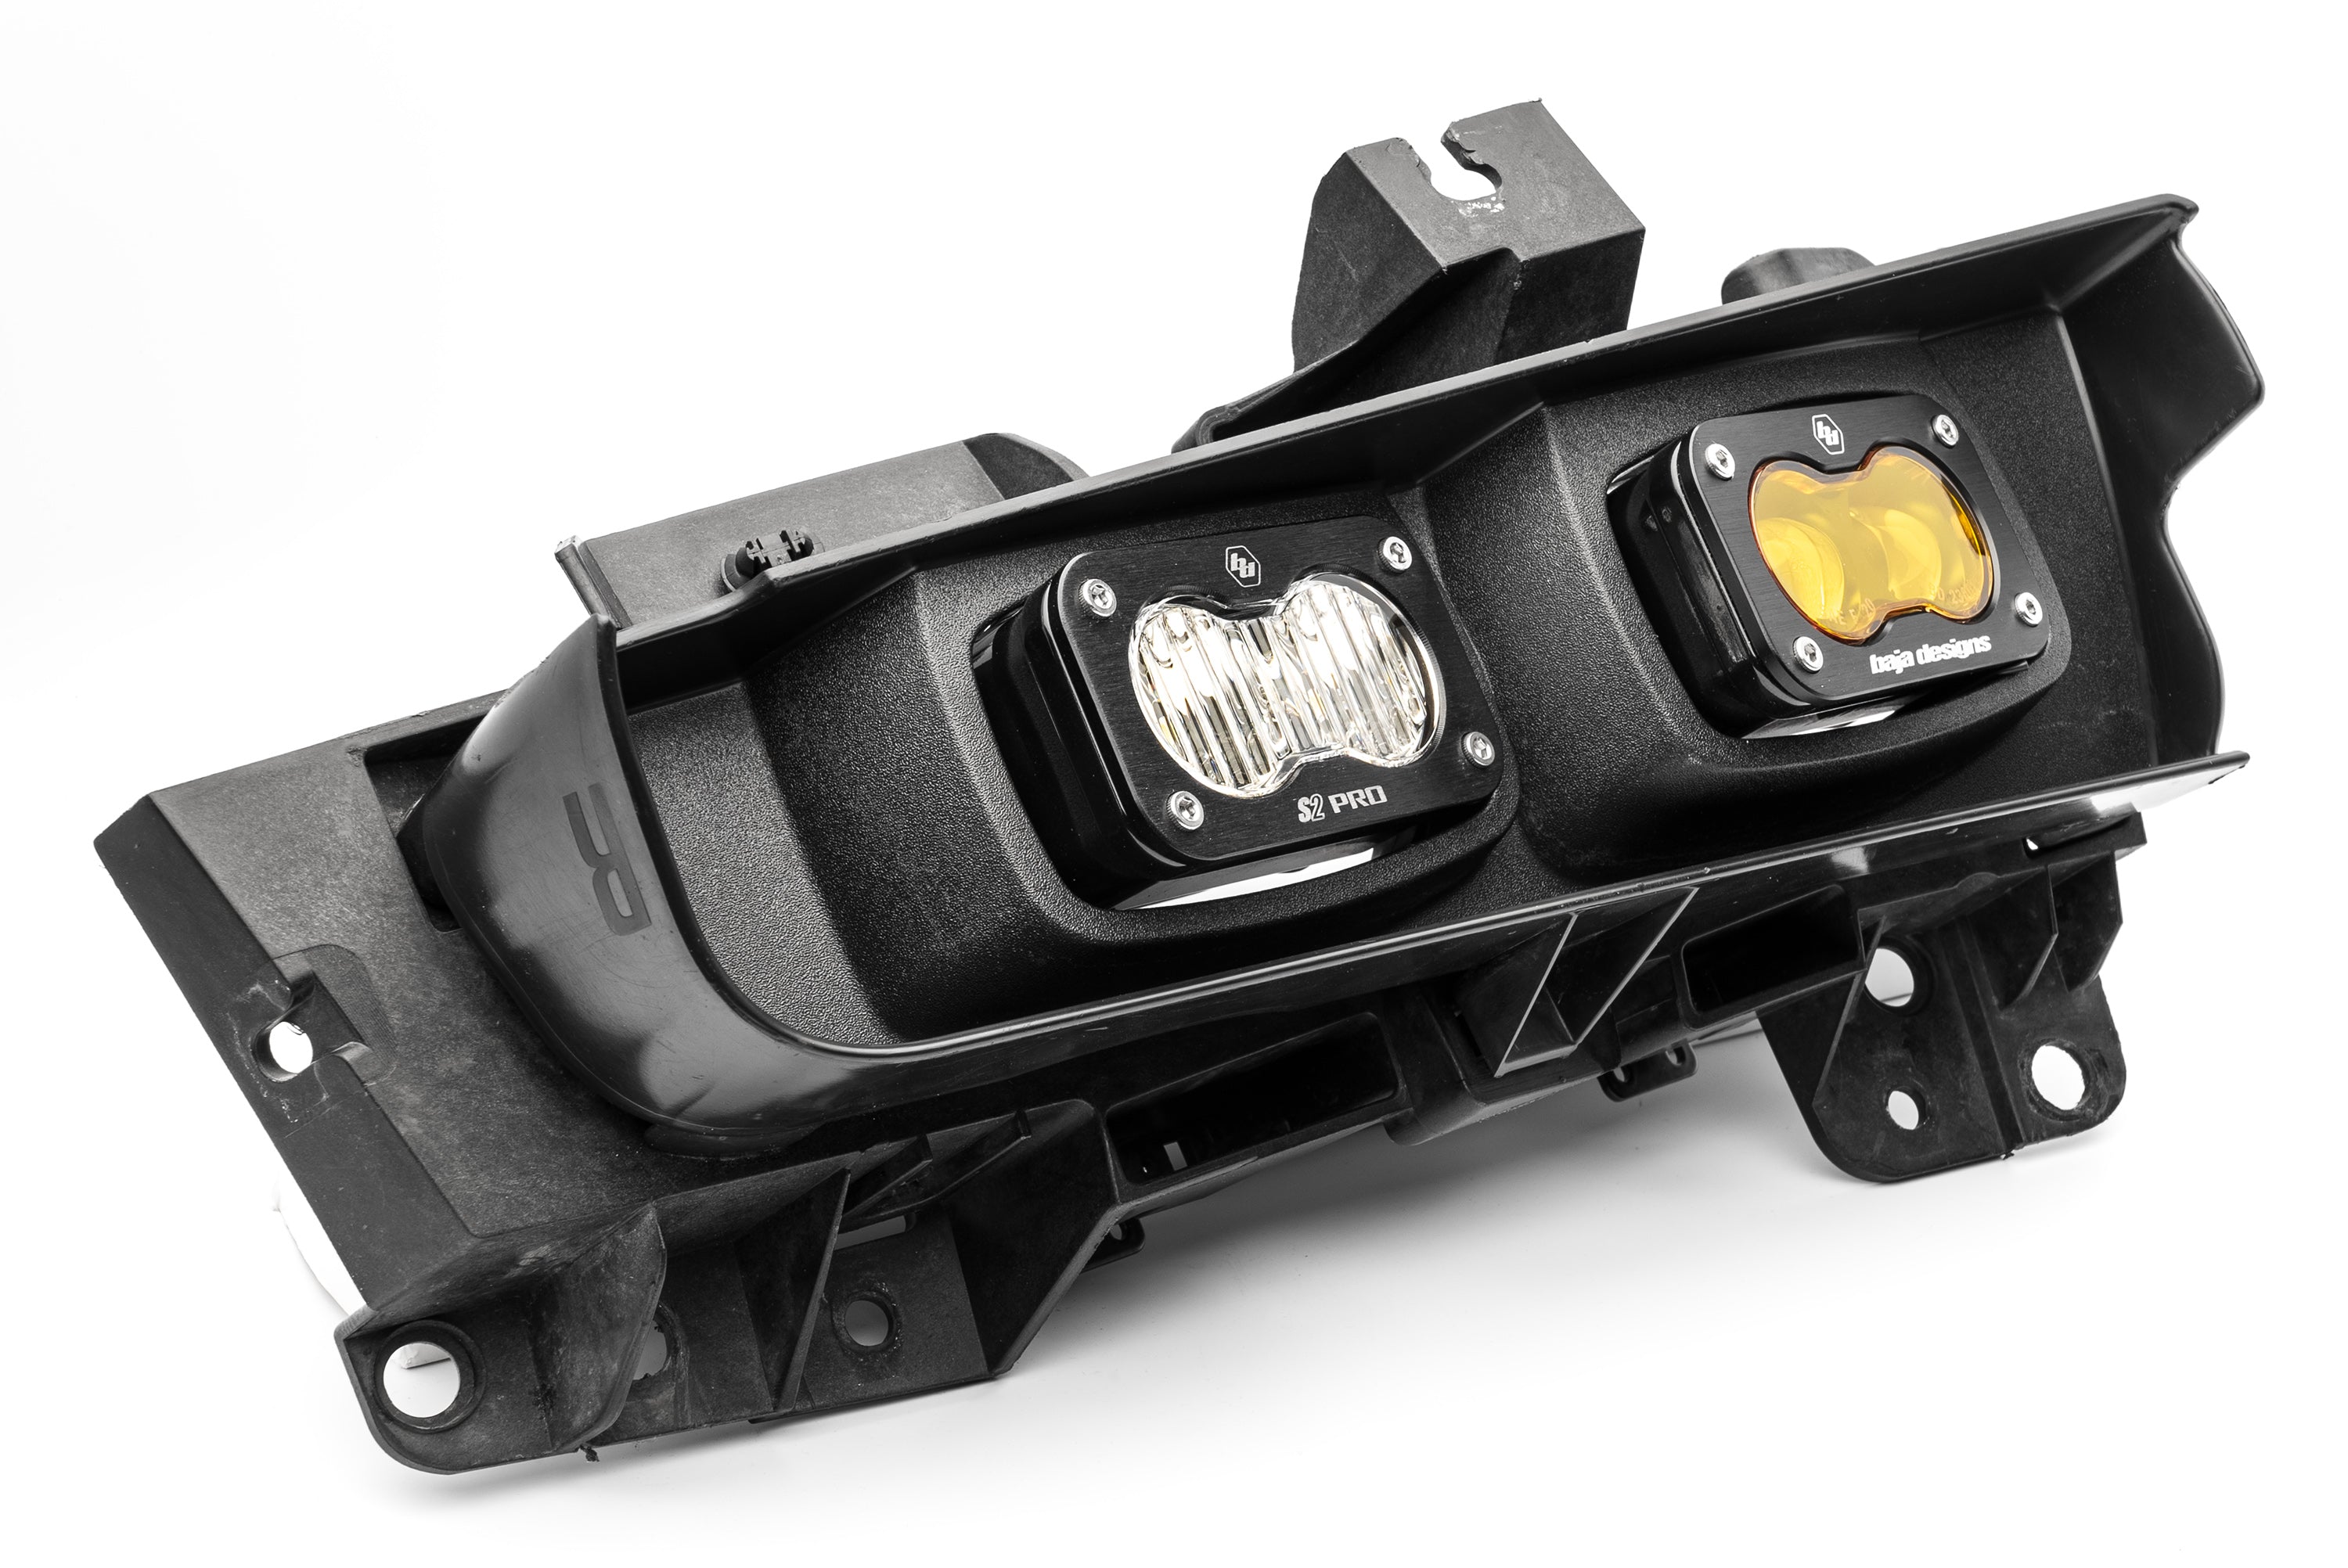 SPV Parts 2021-2024 Ford F-150 & Bronco Raptor OEM (SAE) Fog Light Upgrade Kit with Brackets and Baja Designs S2 Lights